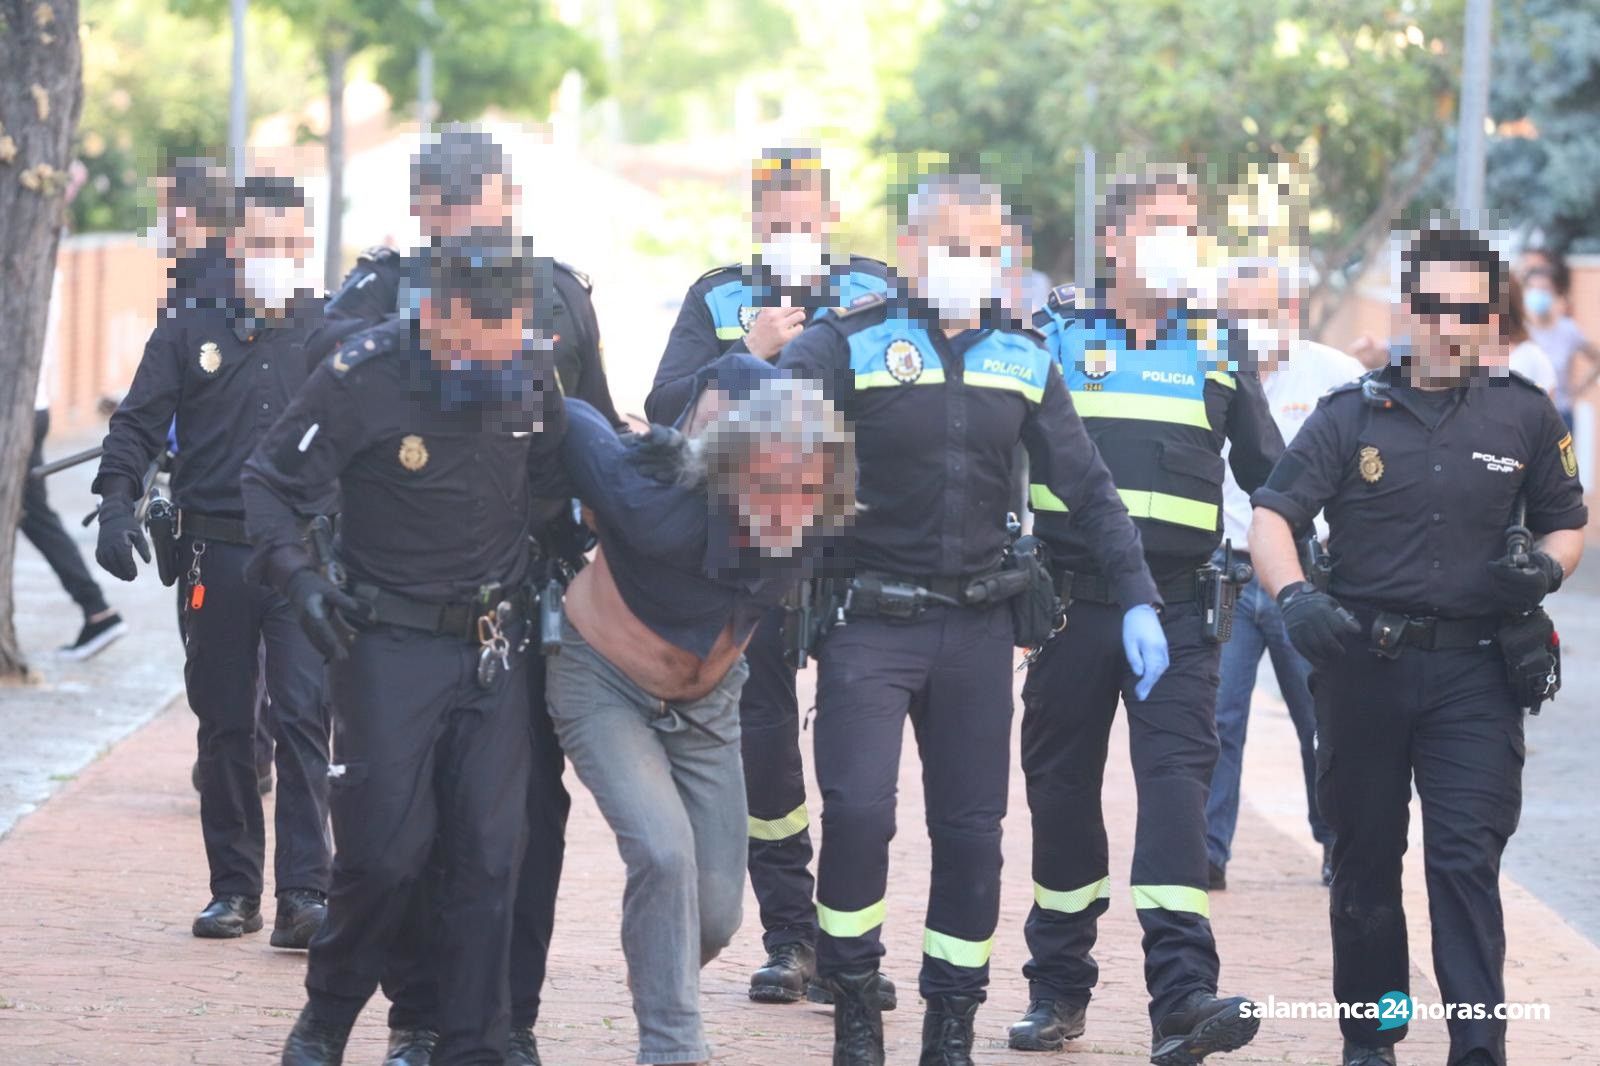  Policia detiene al vecino argentino de Lasalle 5 